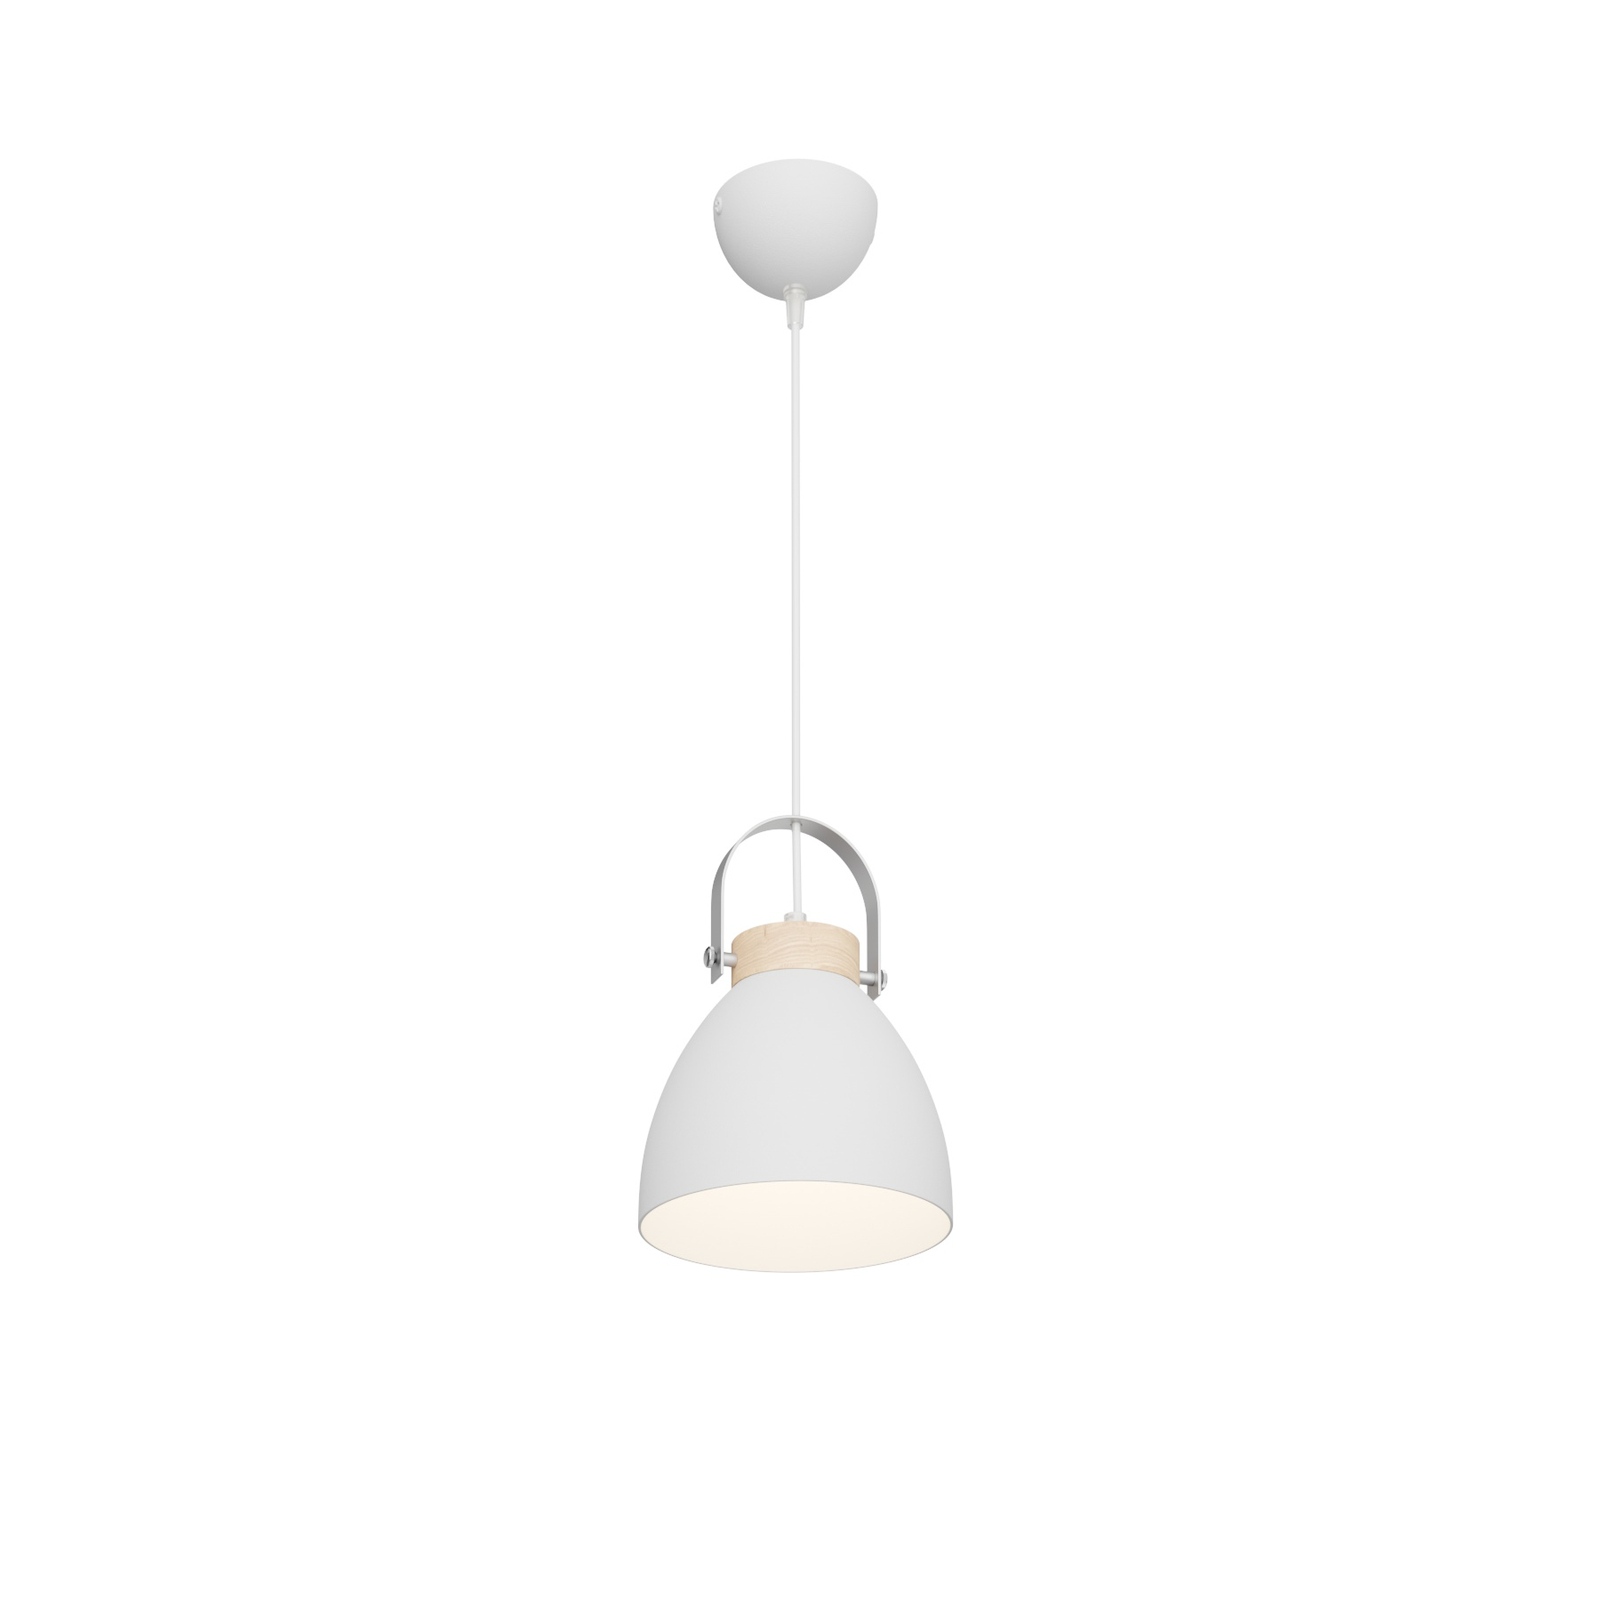 Bergen pendant light, one-bulb, white